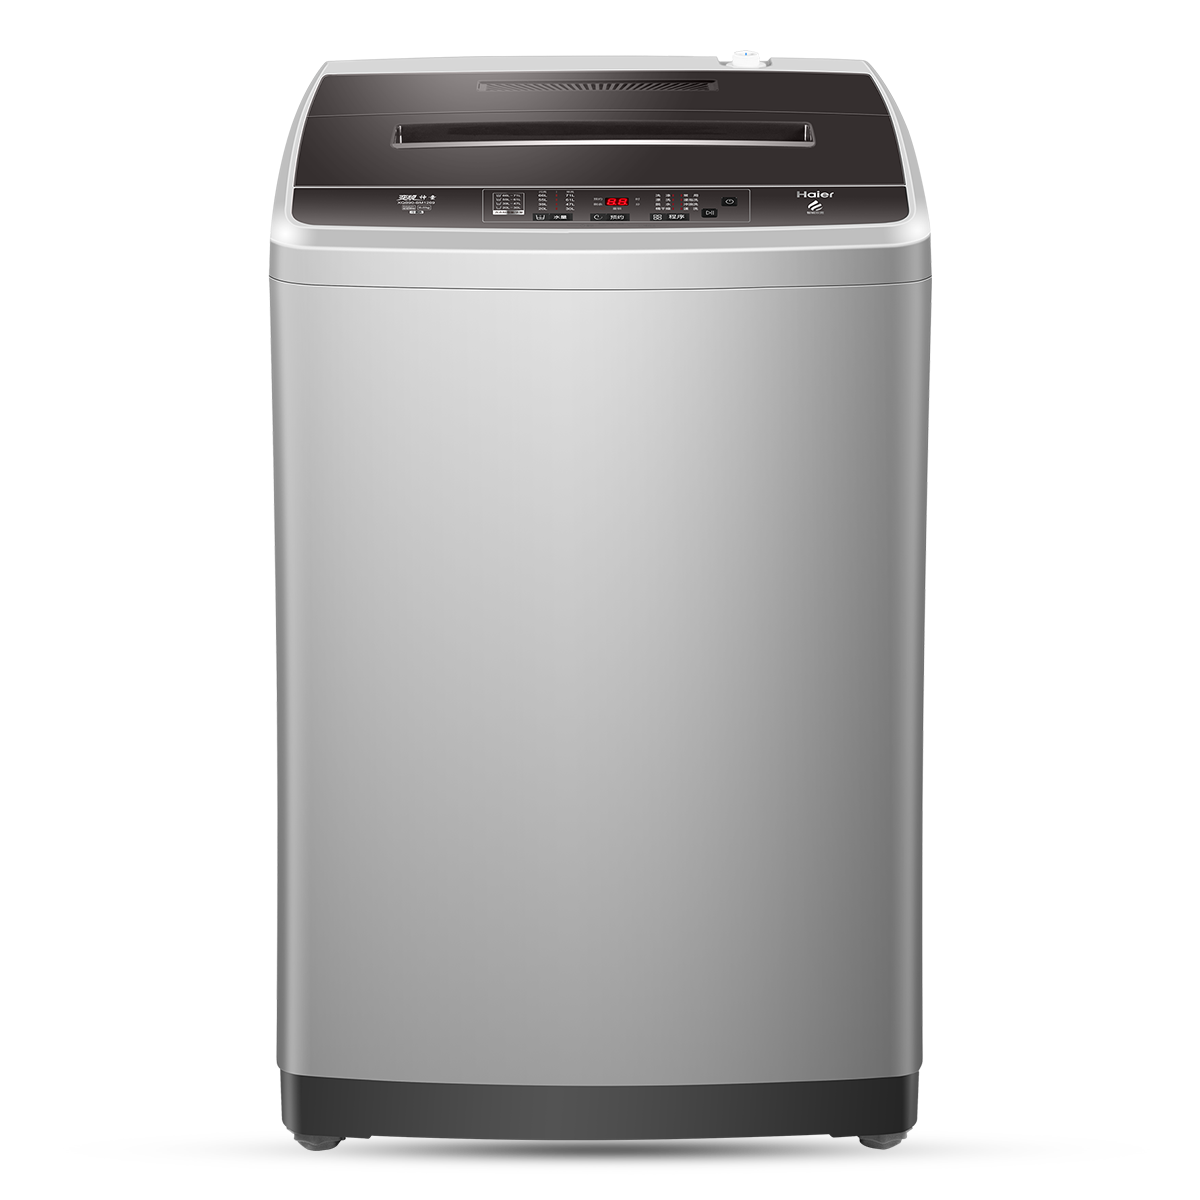 海尔Haier洗衣机 XQB90-BM1269 说明书